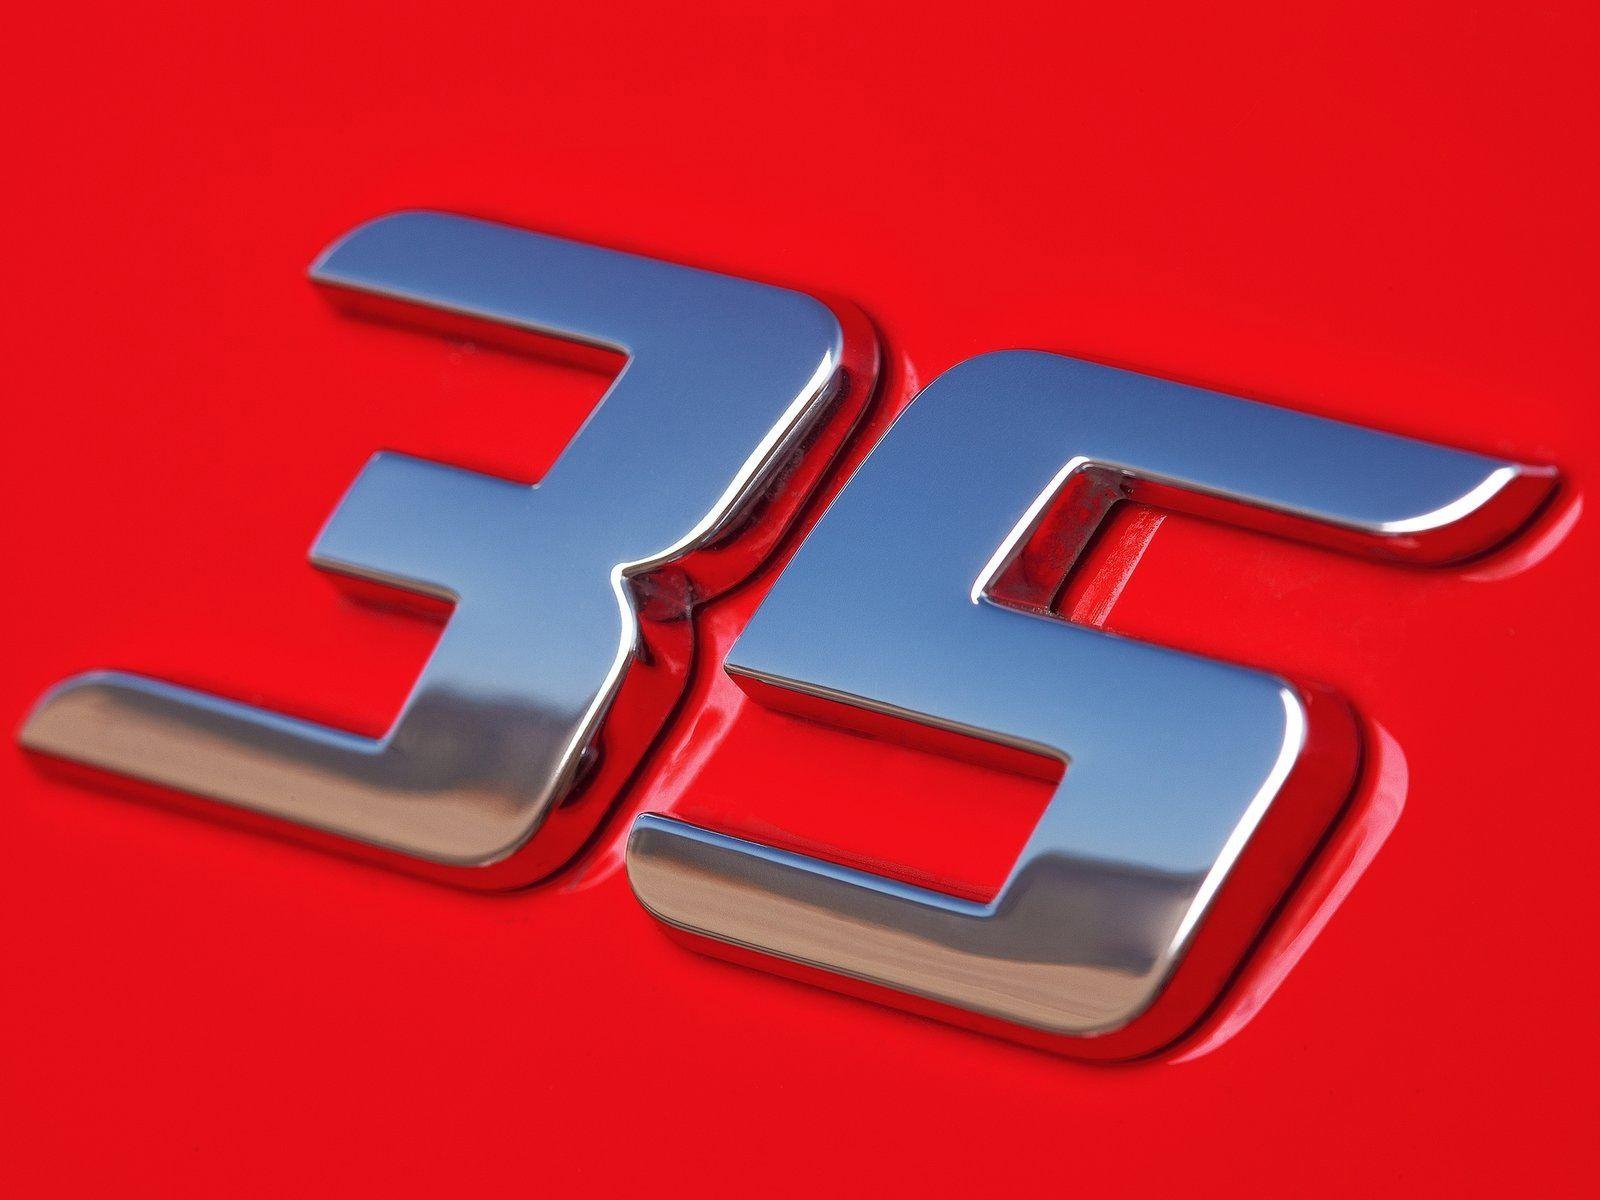 35 Logo - Golf GTI Edition 35 logo | Typophile